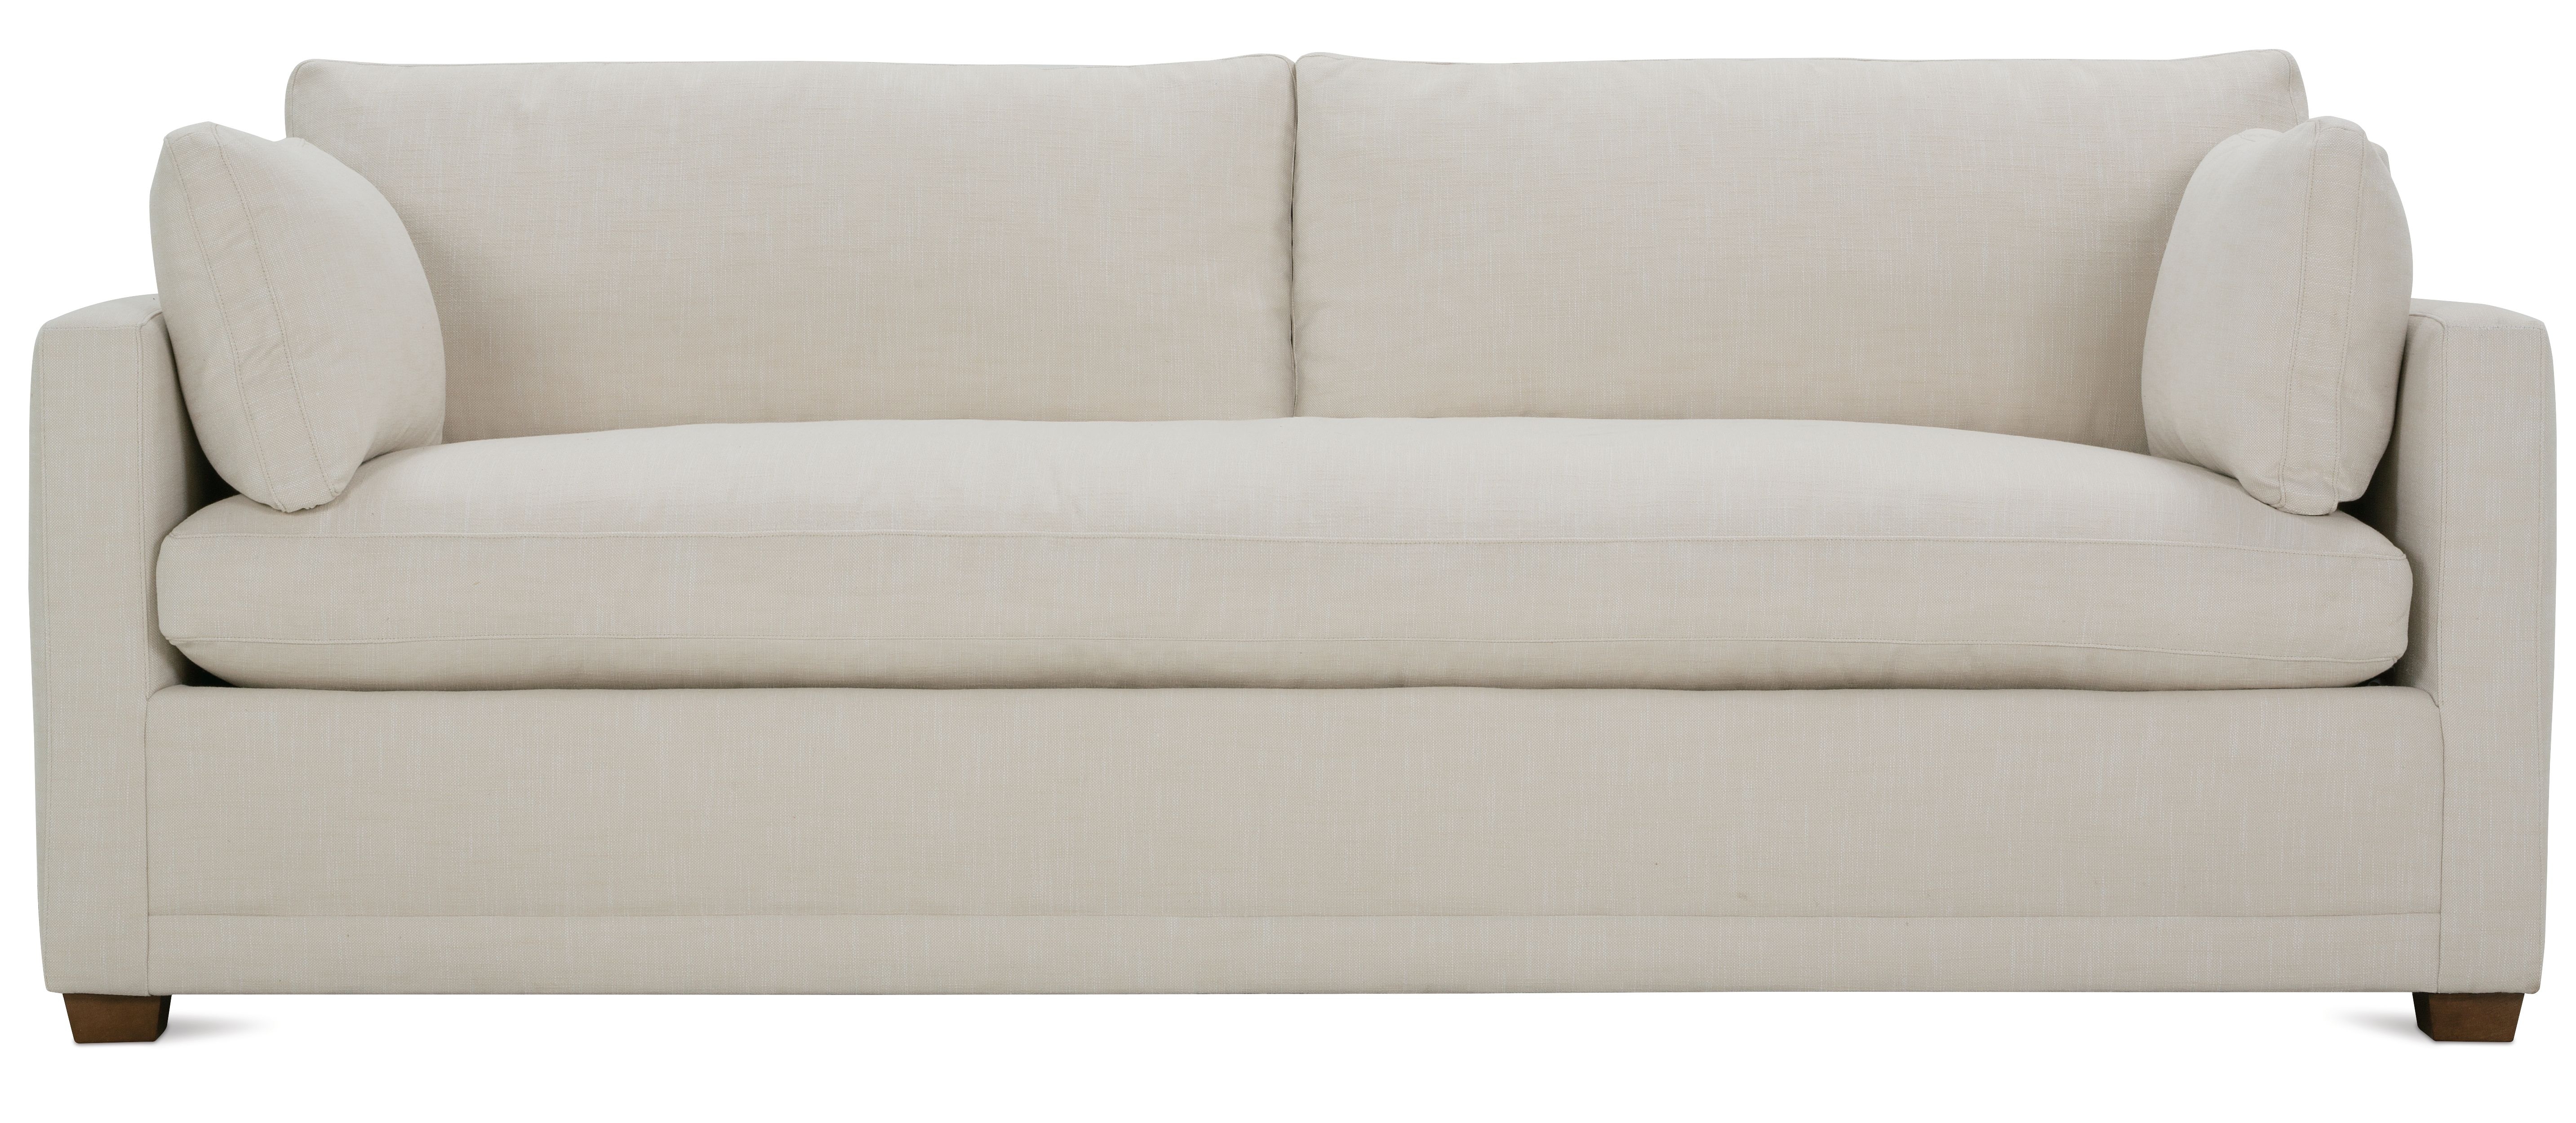 Clarion Sofa, Bench Cushion, Natural, 88" - Image 0